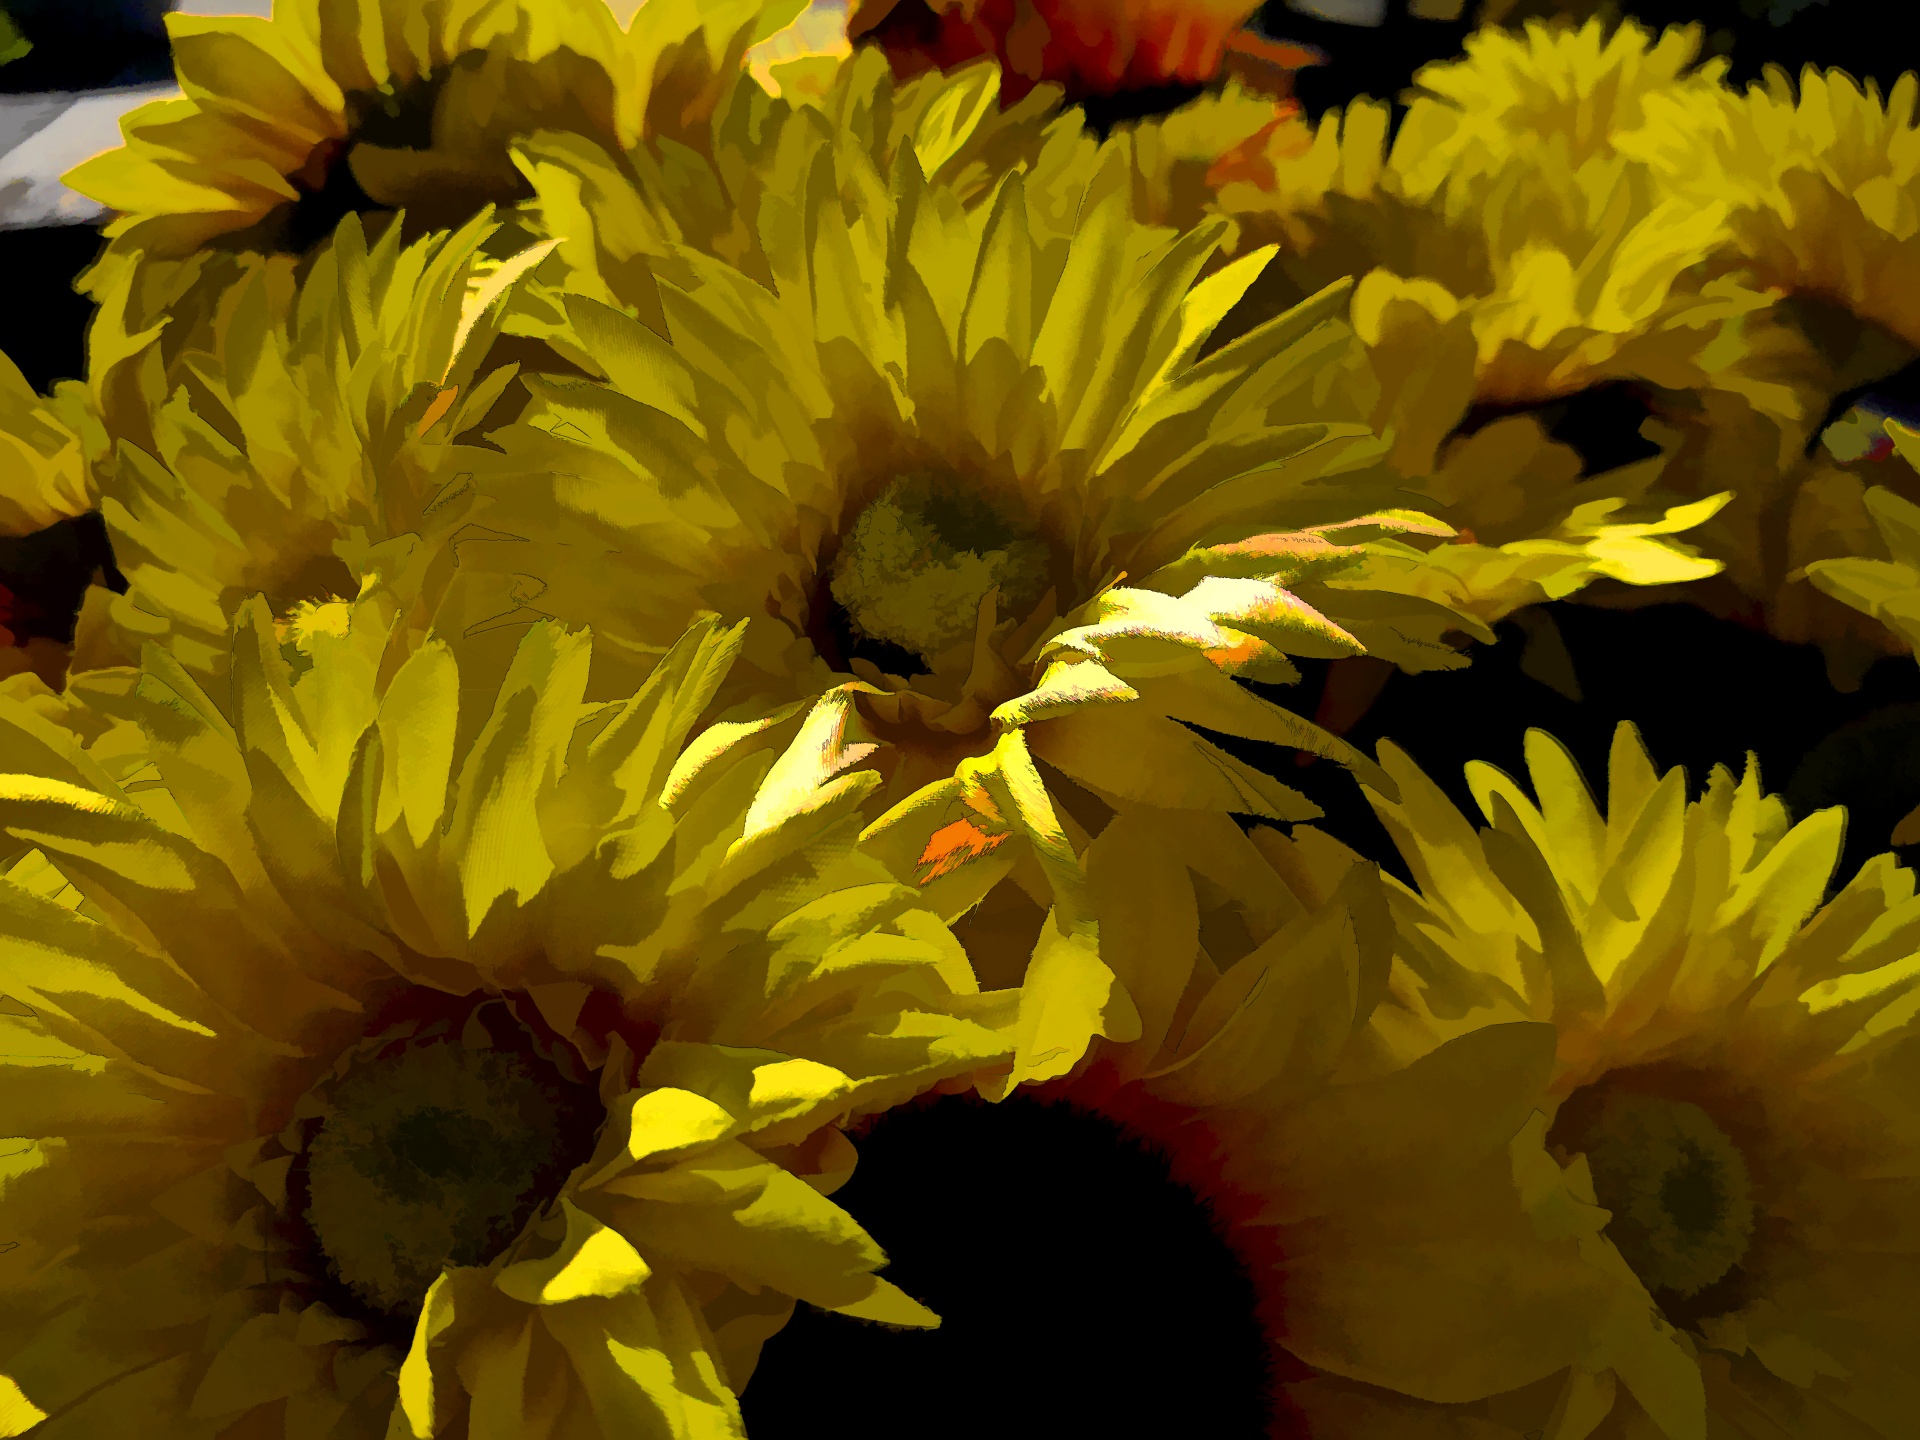 sunflowers daisies chrysanthemum free photo